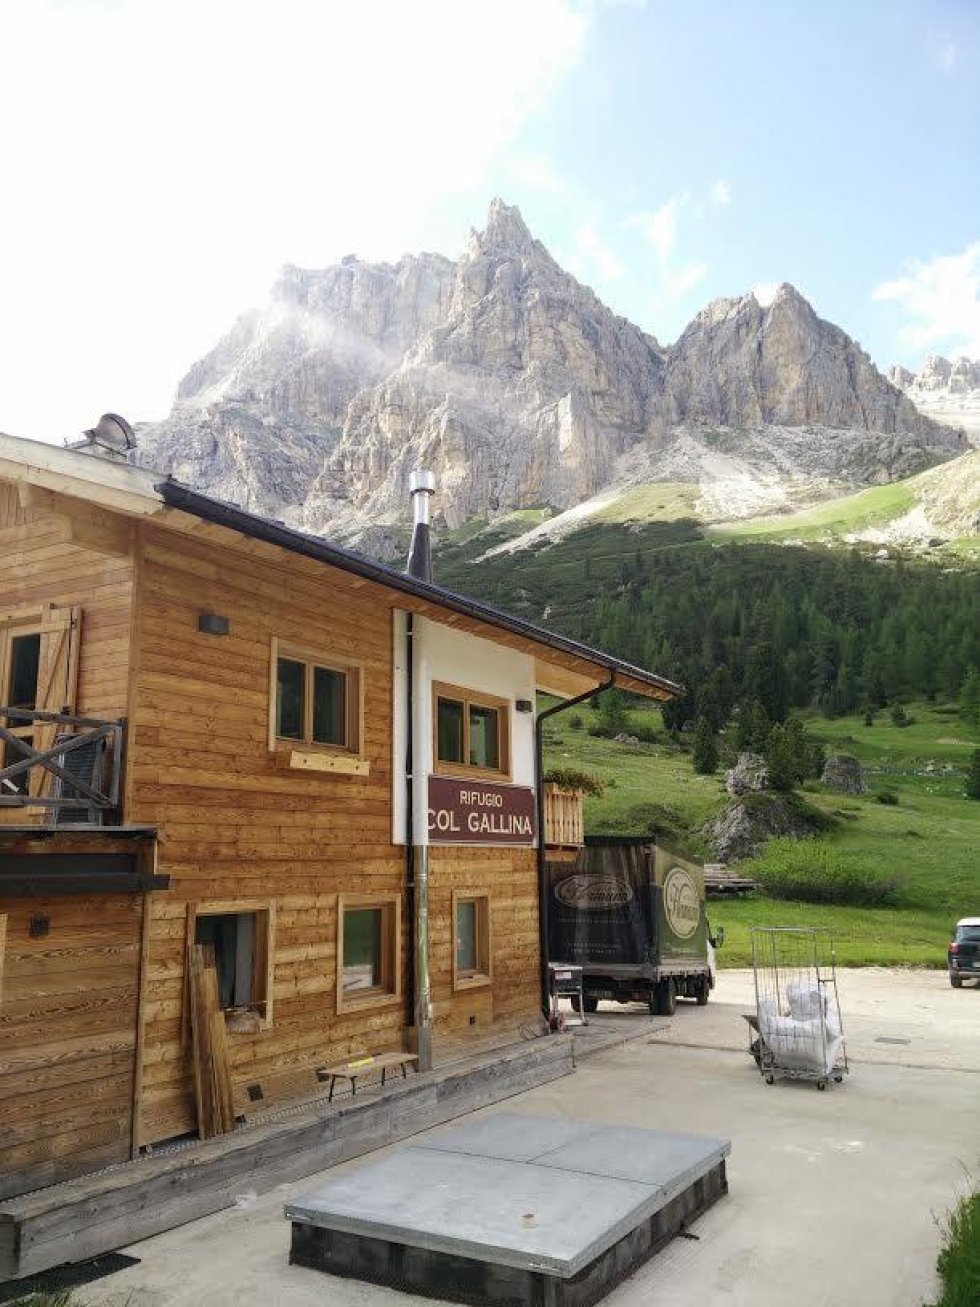 Cortina dAmpezzo  rejseverdenens svar på The Big Five